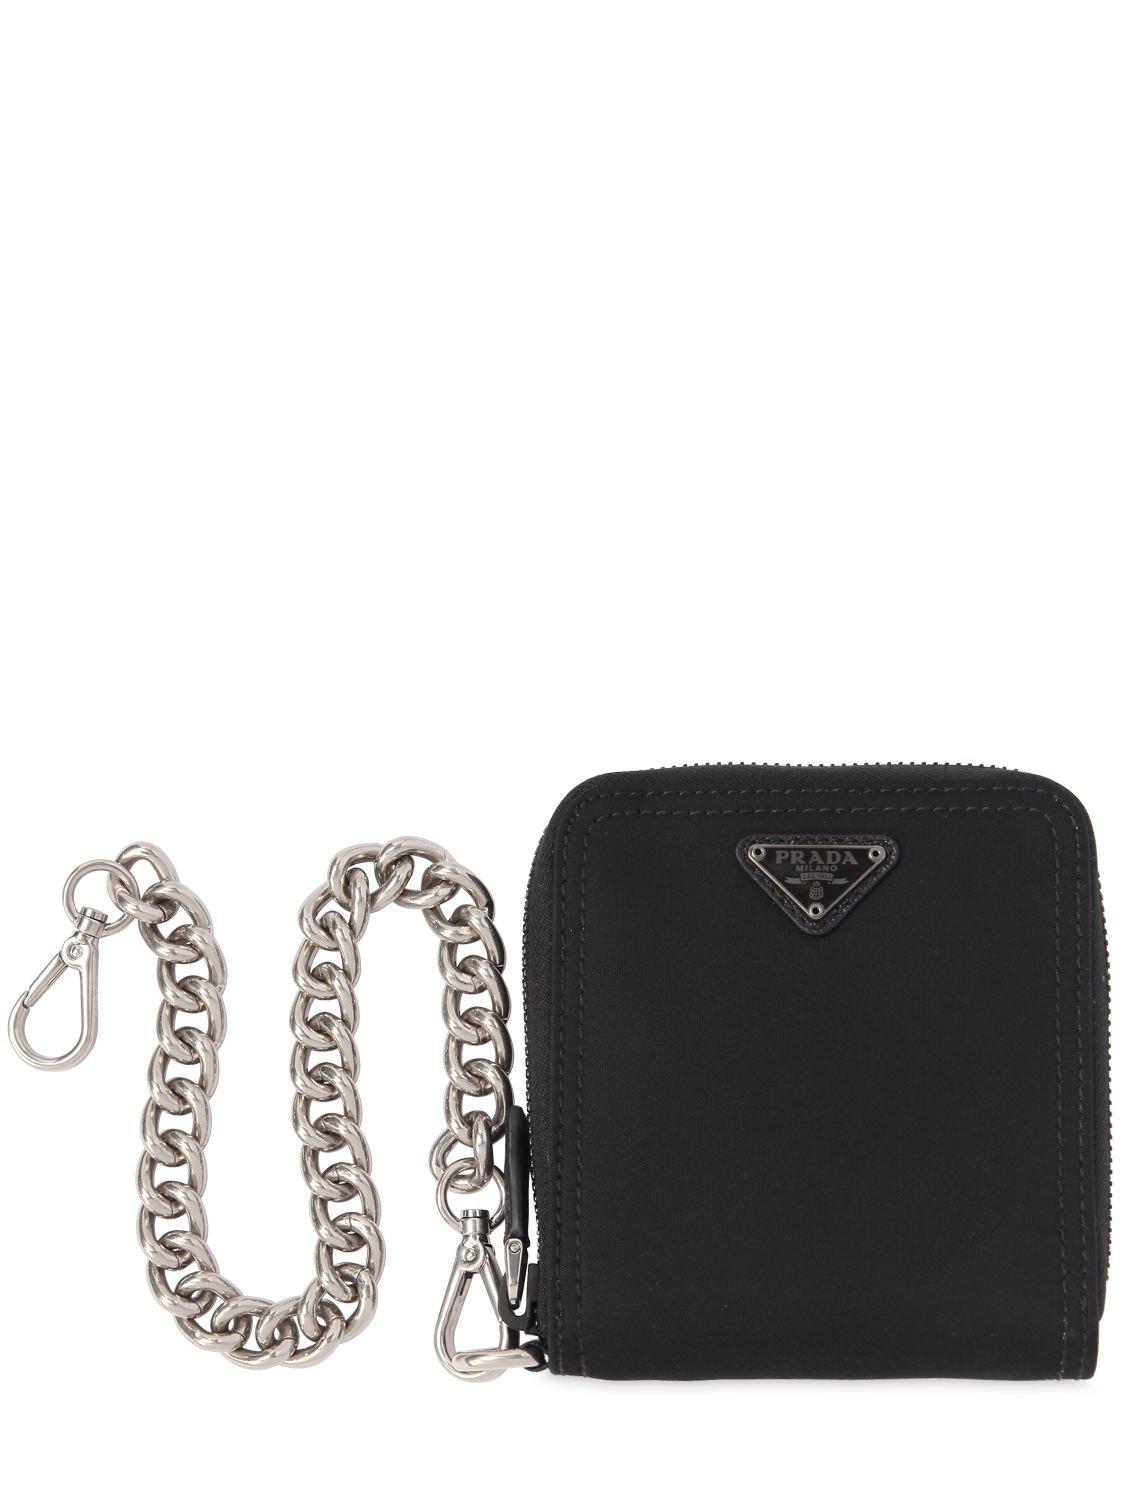 Lyst - Prada Nylon Zip Around Wallet in Black